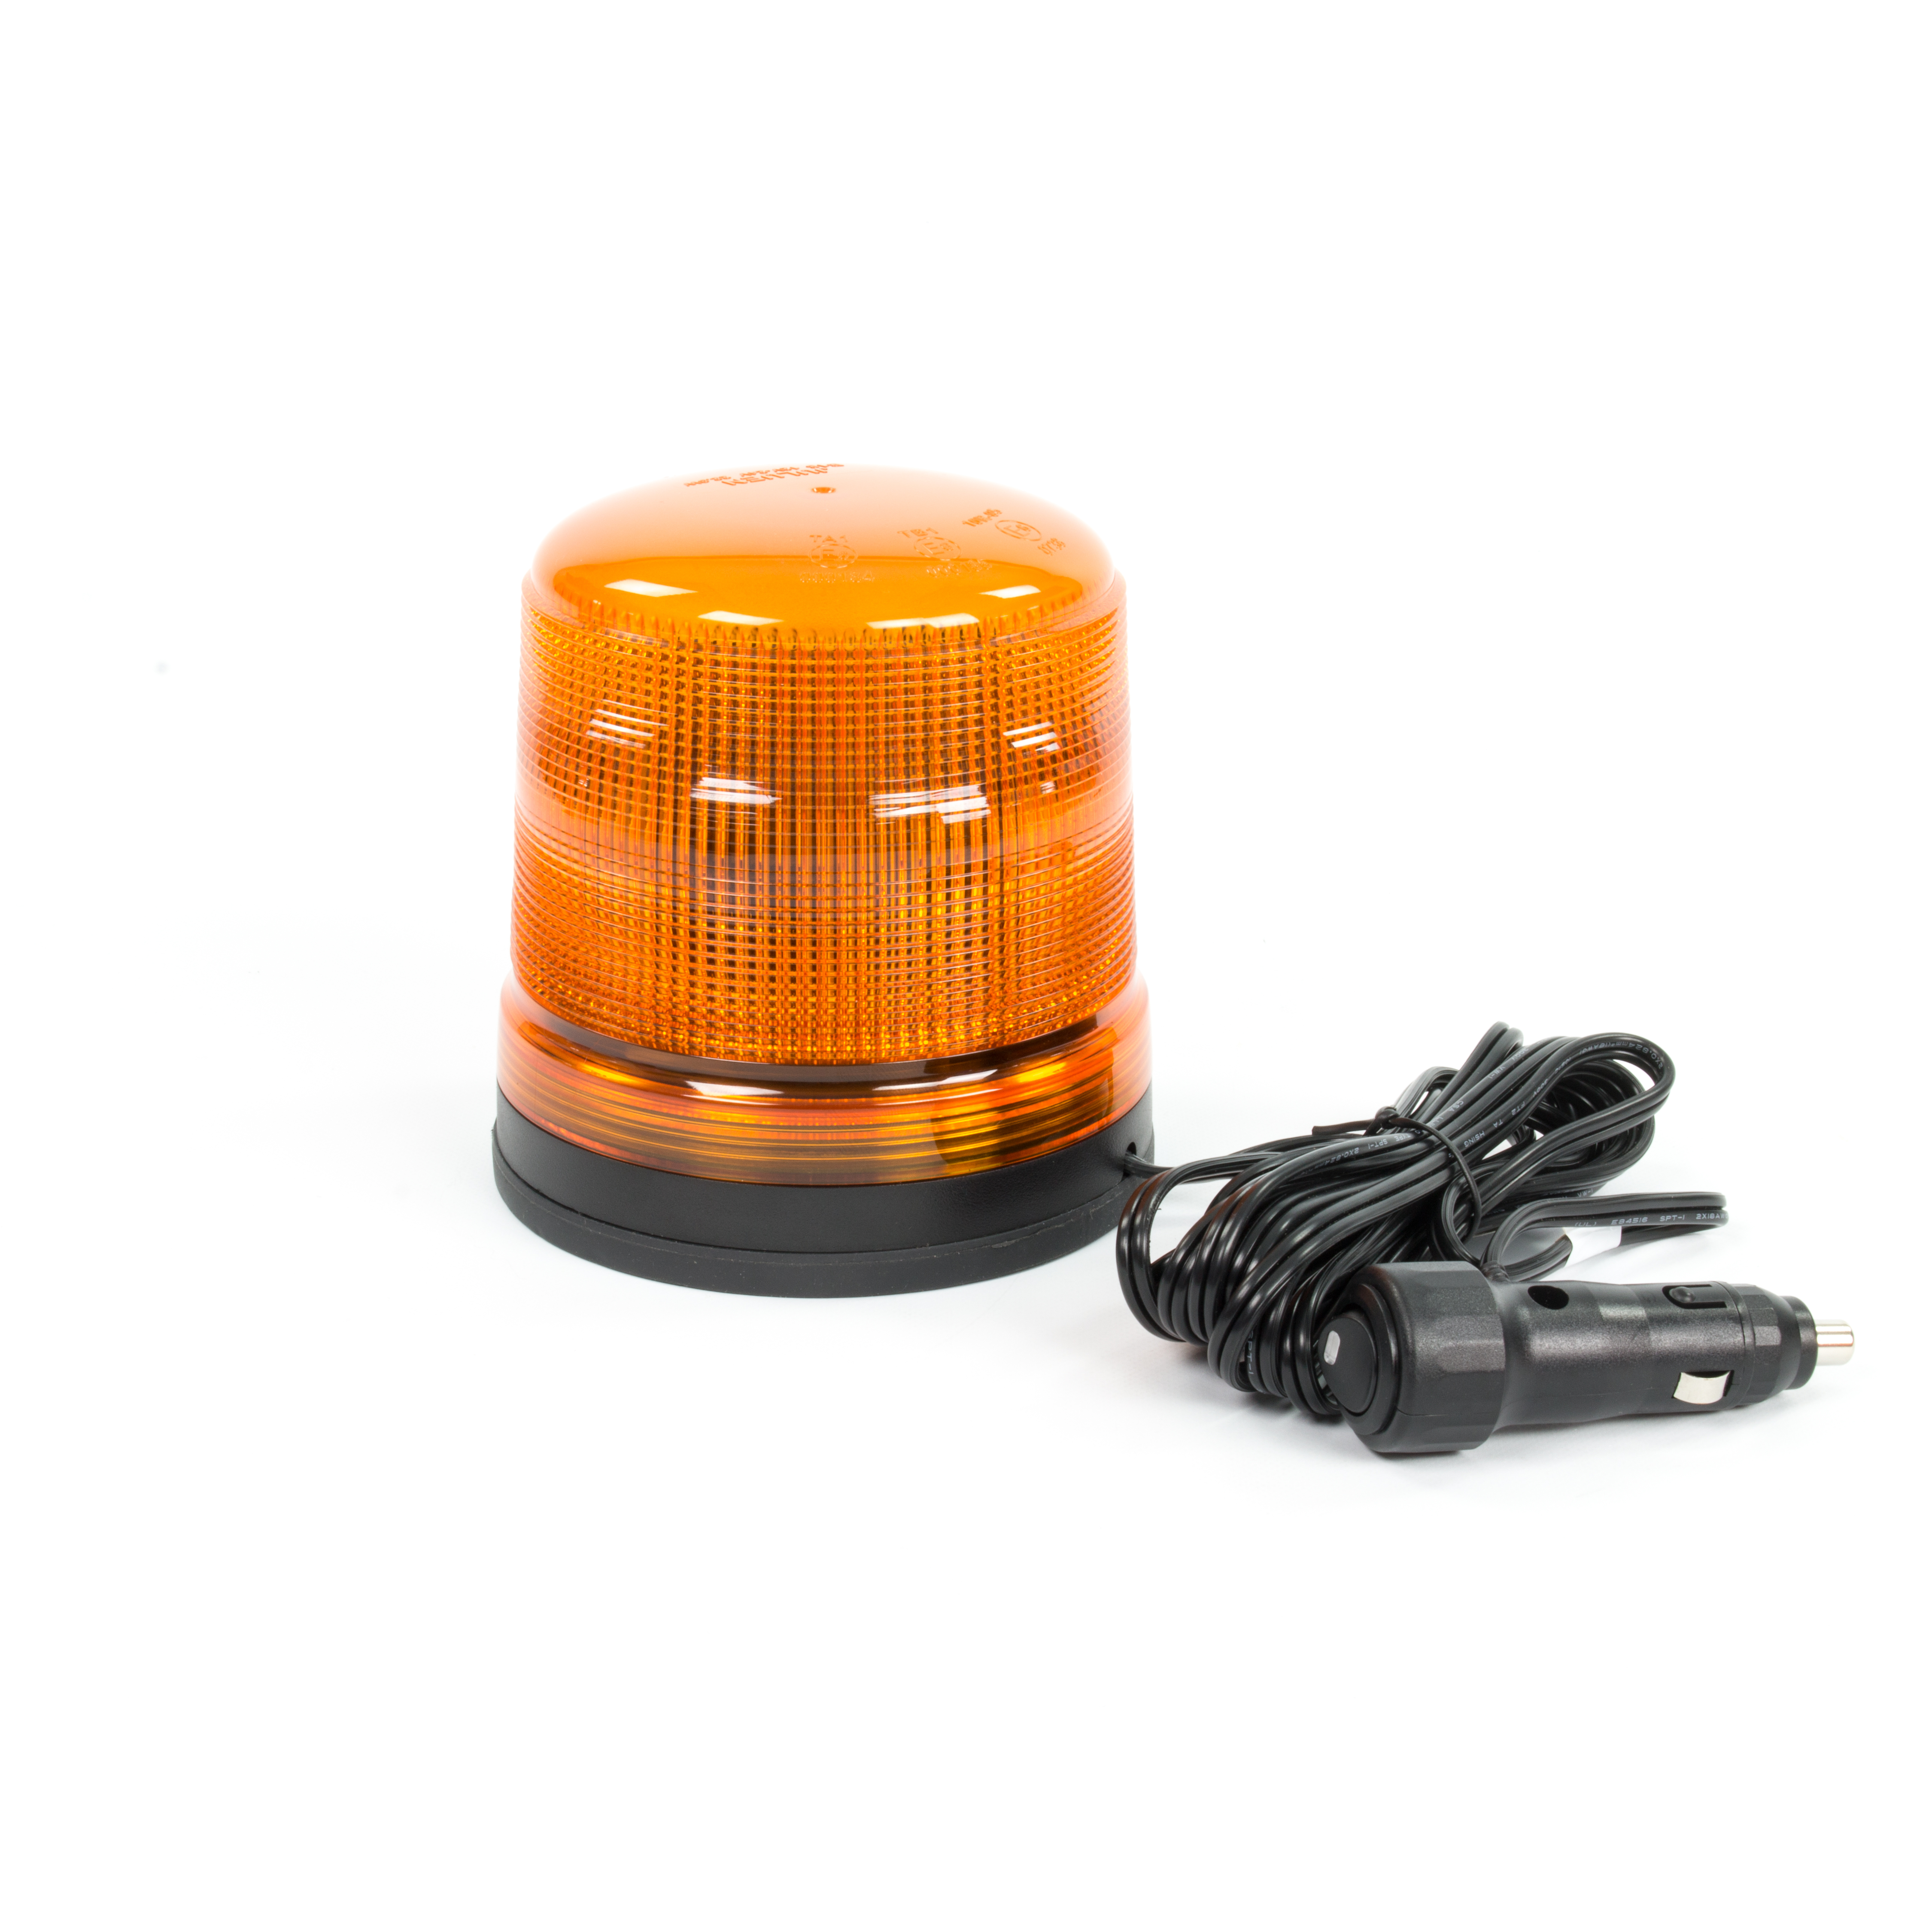 Rundumleuchte LED mit Magnetfuß und Zigarettenanzünder Stecker in